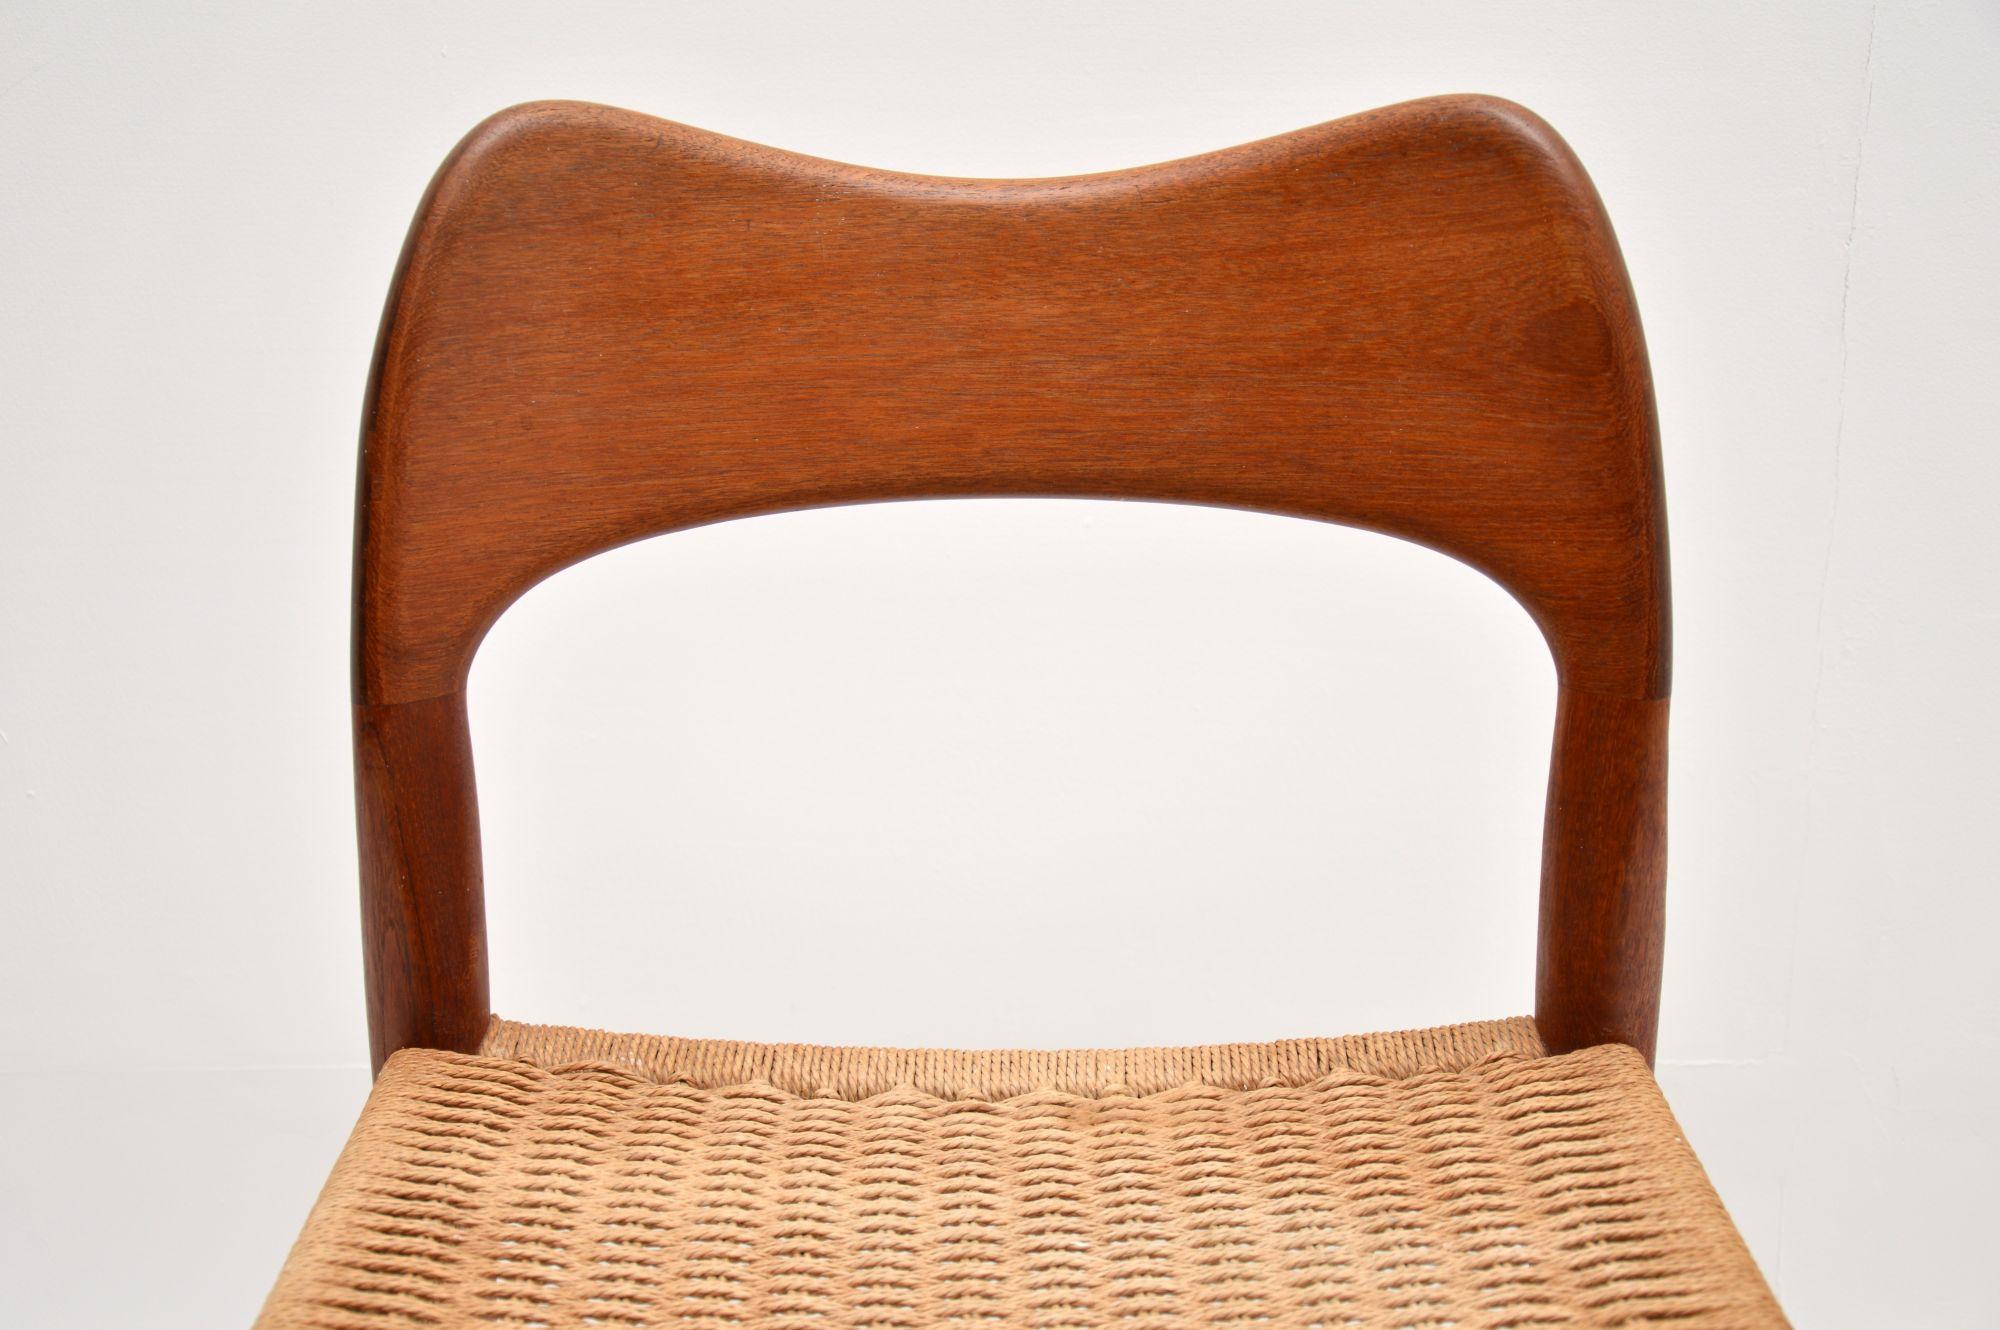 20th Century Danish Teak Vintage Chair by Arne Hovmand-Olsen for Mogens Kold